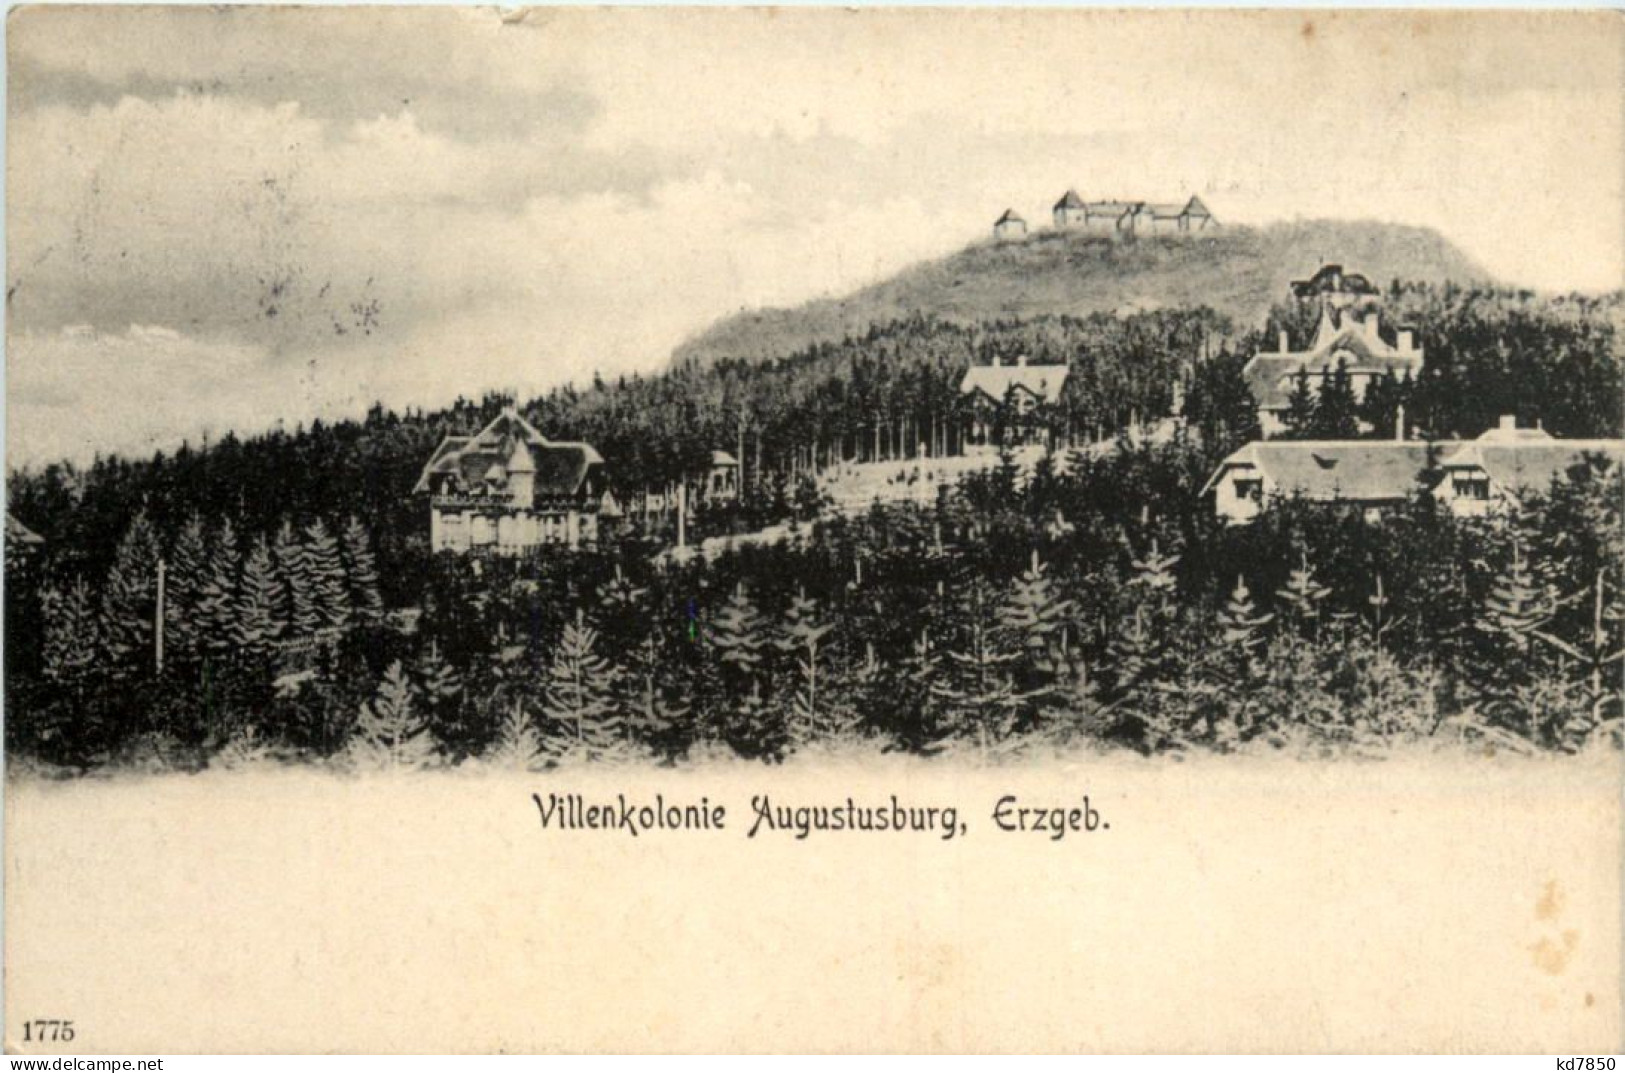 Villenkolonie Augustusburg, Erzgeb. - Augustusburg